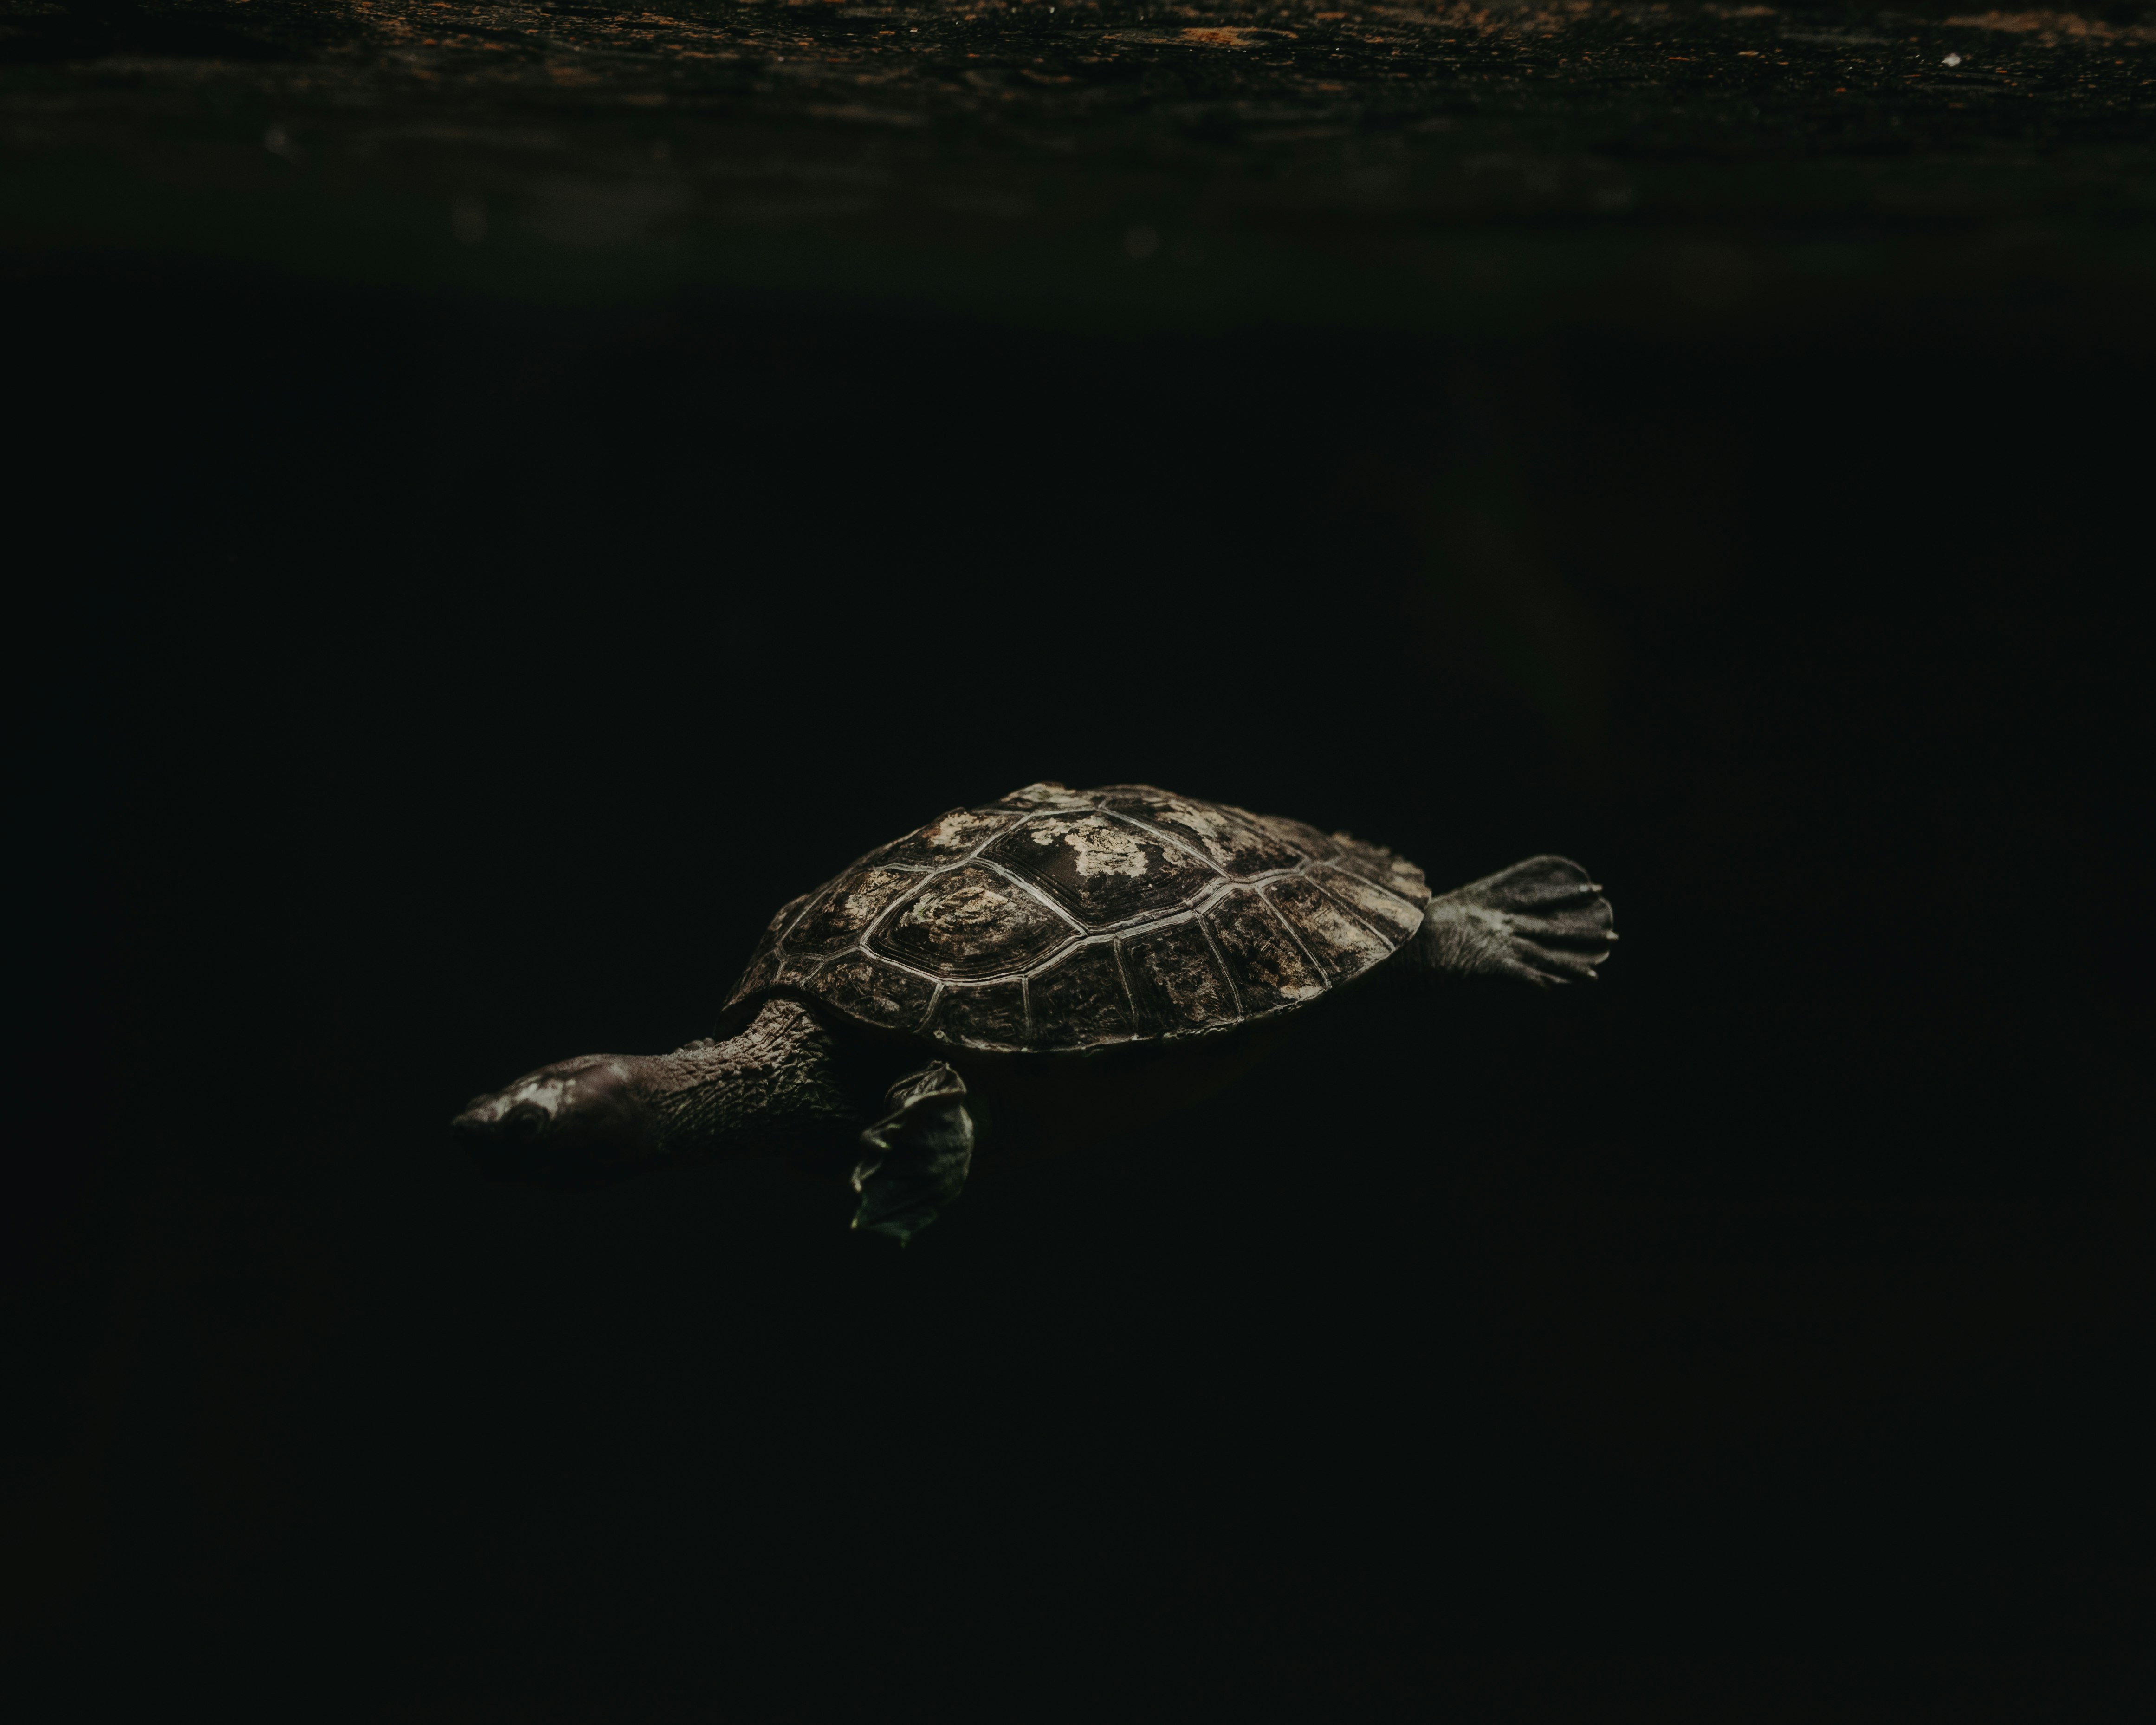 turtle underwater